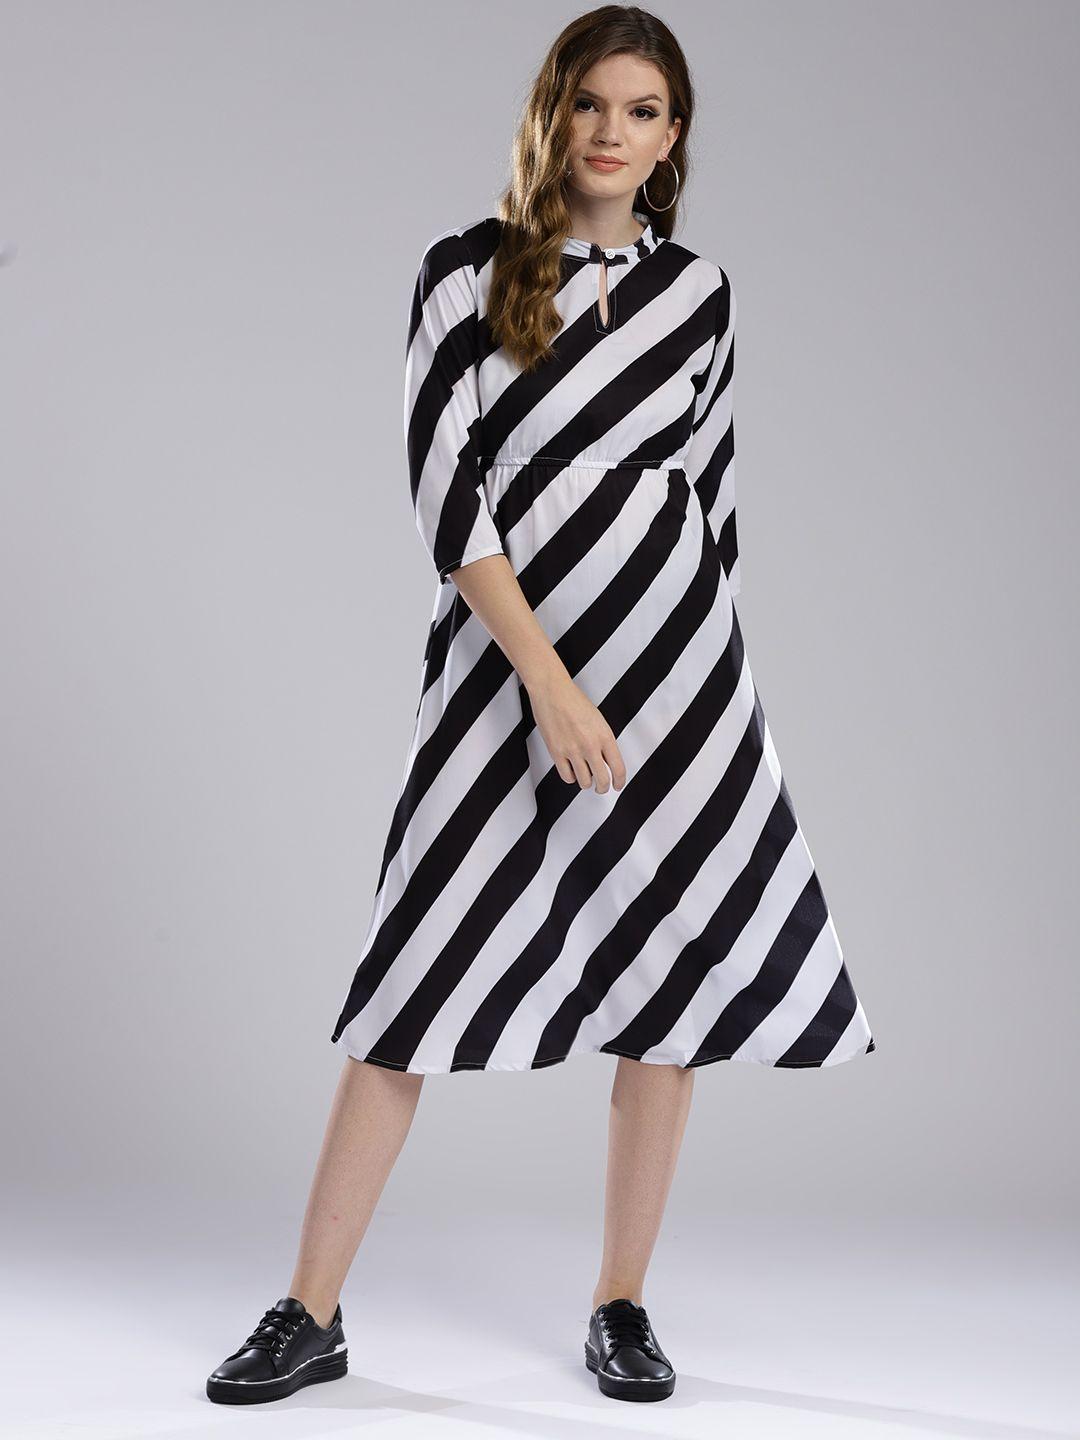 hubberholme women white & black striped empire dress